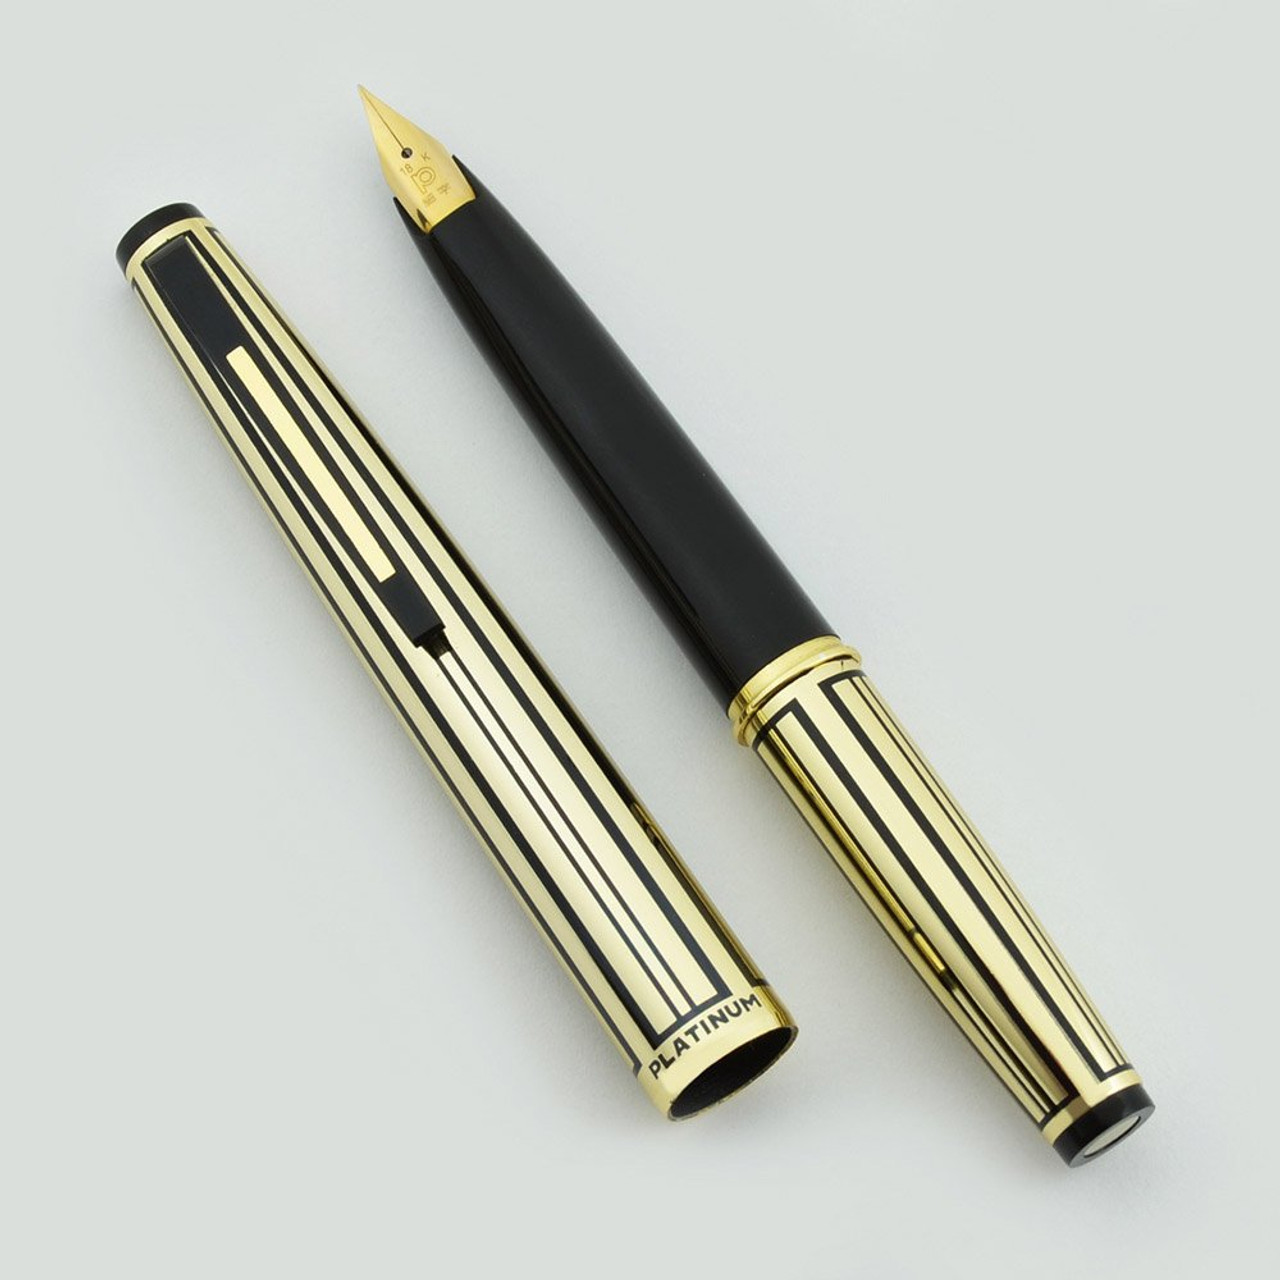 Platinum Pocket Fountain Pen PKG-4000A - 1960s, Black & Gold Striped, Fine Semi-Flex 18k Nib (Near Mint, Works Well)